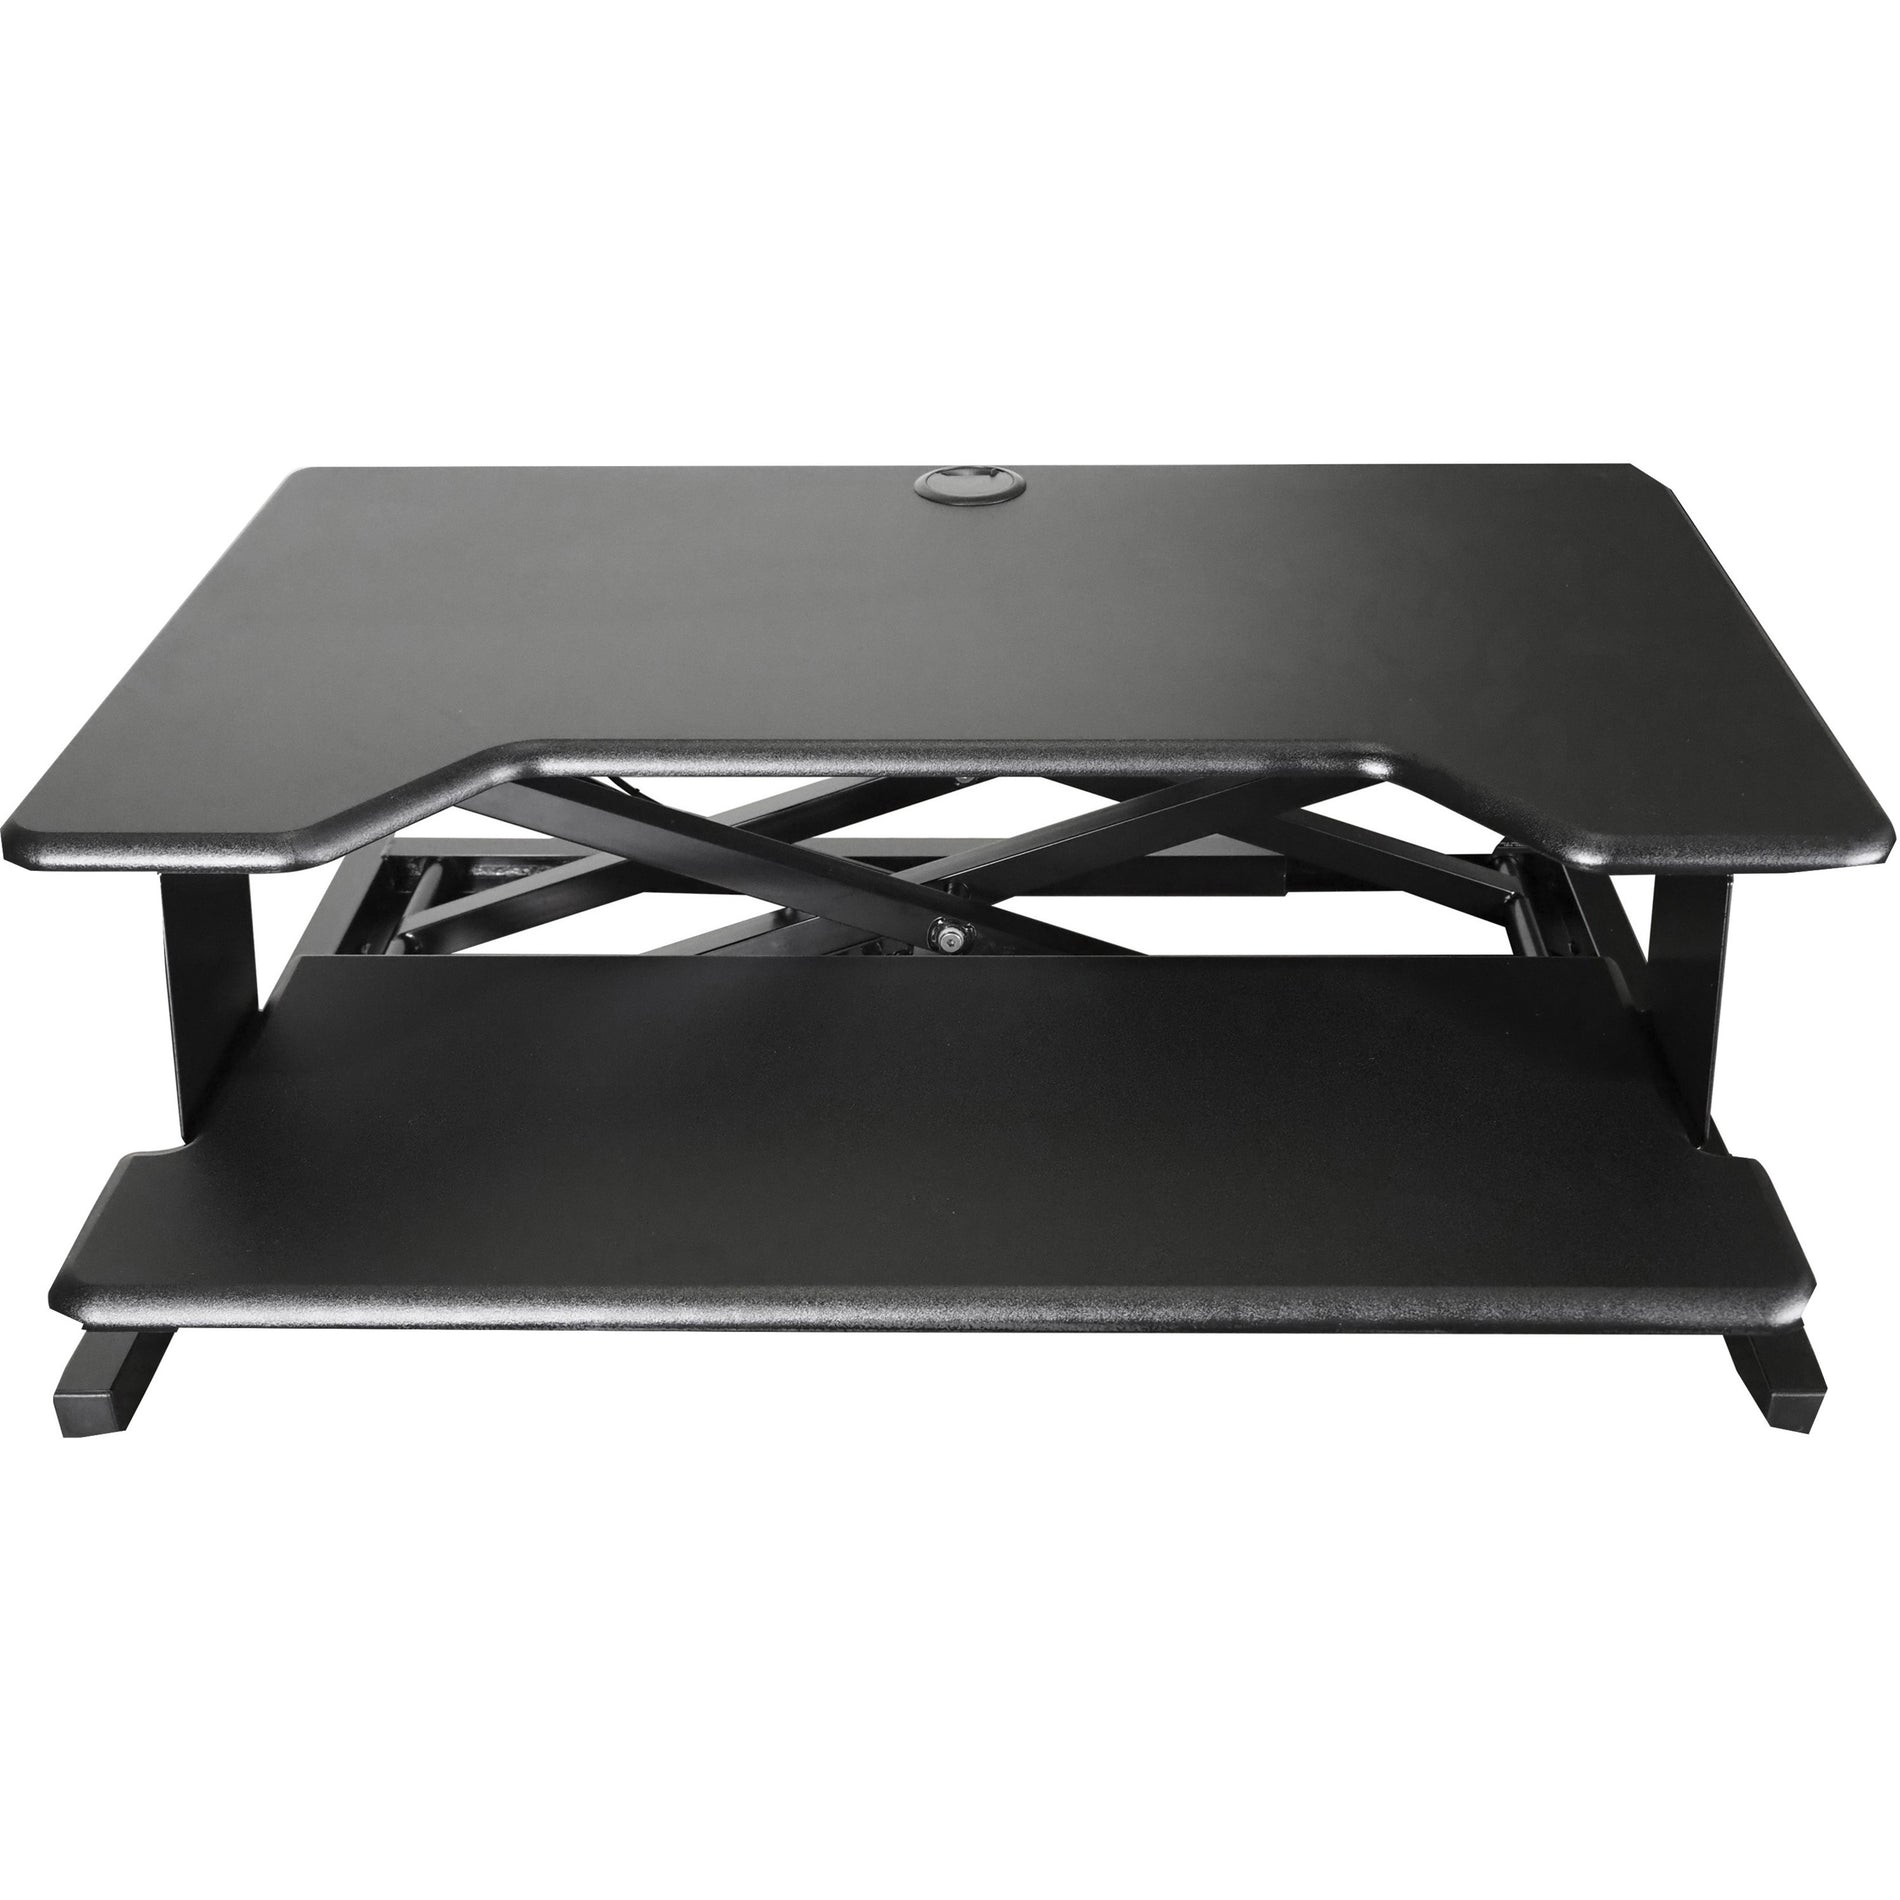 Kantek STS900 Sit-to-Stand Desk Riser, 35"x24"x5-1/4", Black - Pneumatic Adjustment, Height Adjustable, Grommet